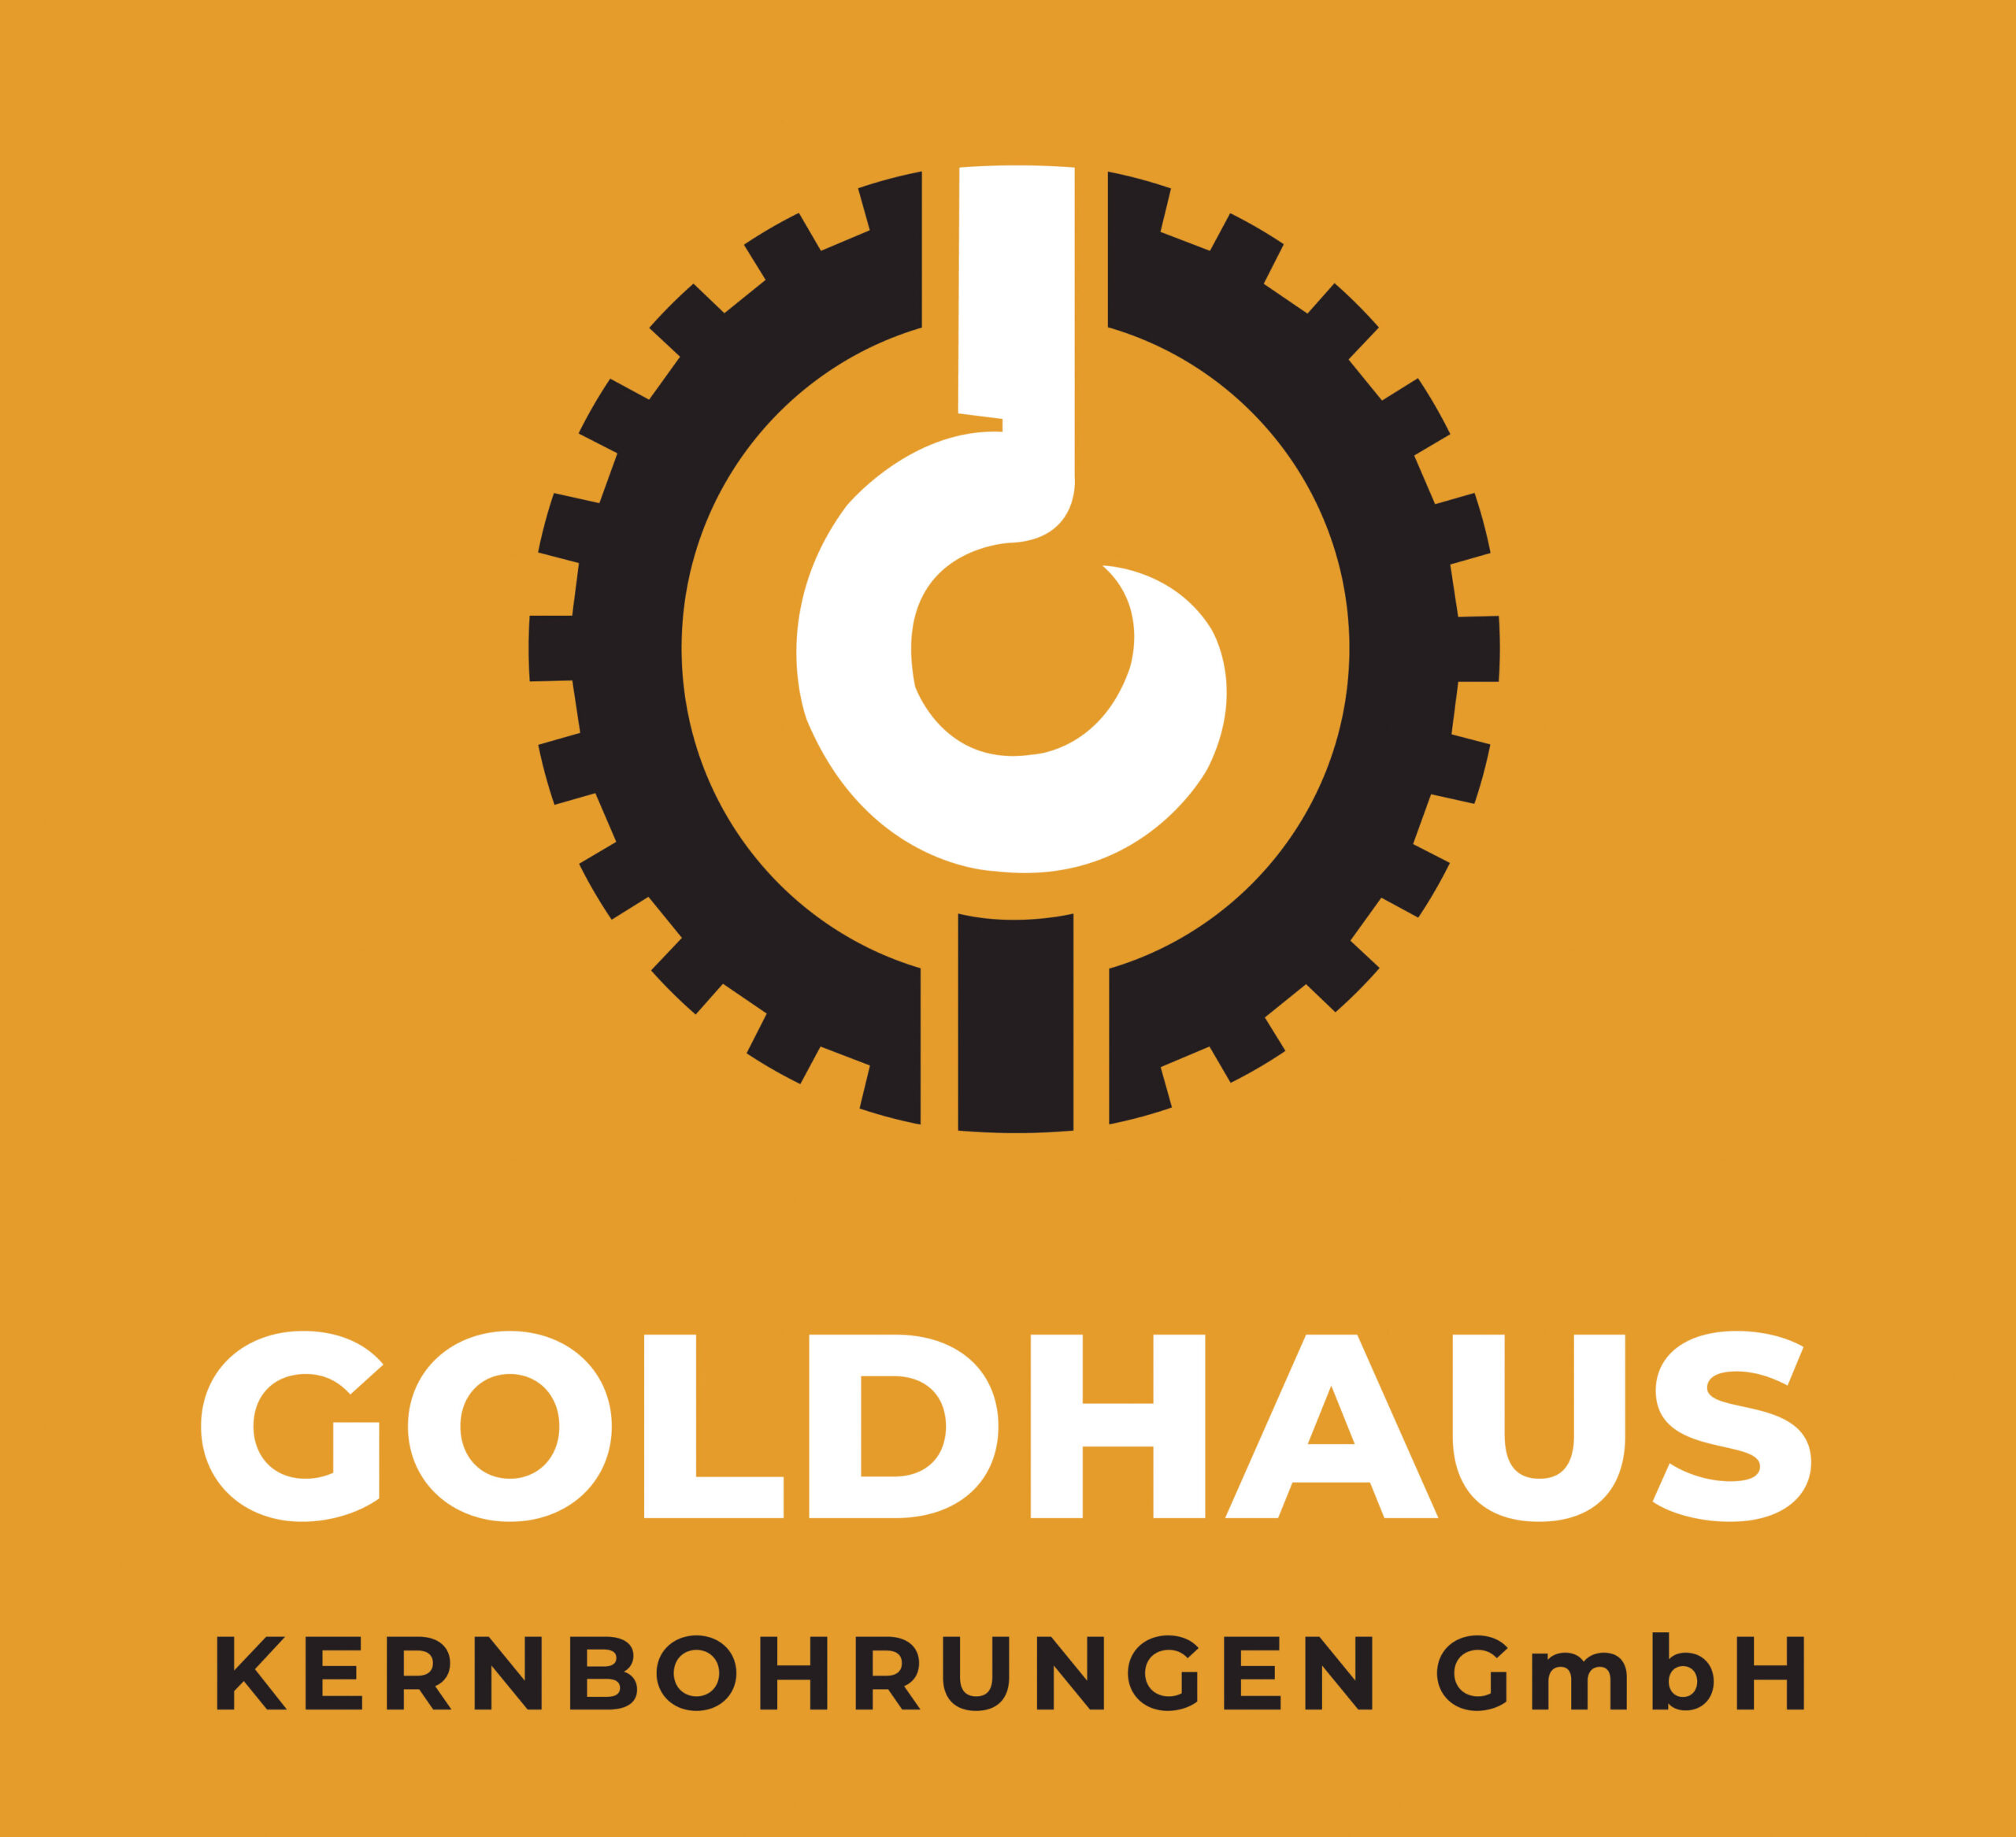 Goldhaus Kernbohrungen GmbH